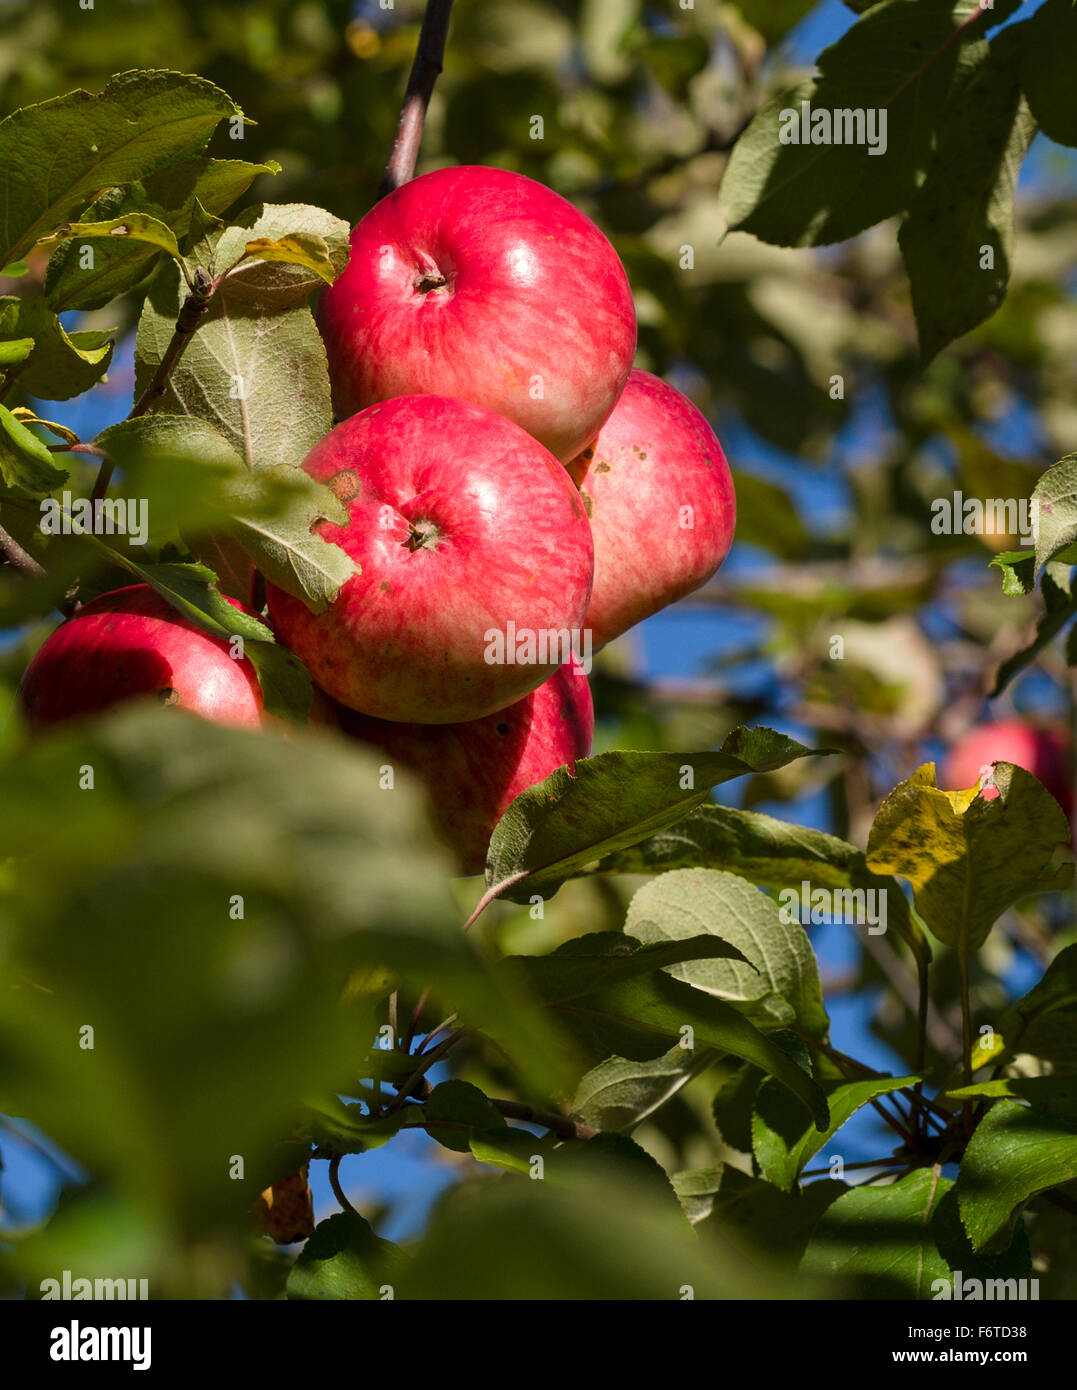 Pommes rouges bien mûrs, avec un peu de la tavelure. Un cluster de pommes rouges sur un arbre avec un verger abandonné peu montrant la maladie. Banque D'Images